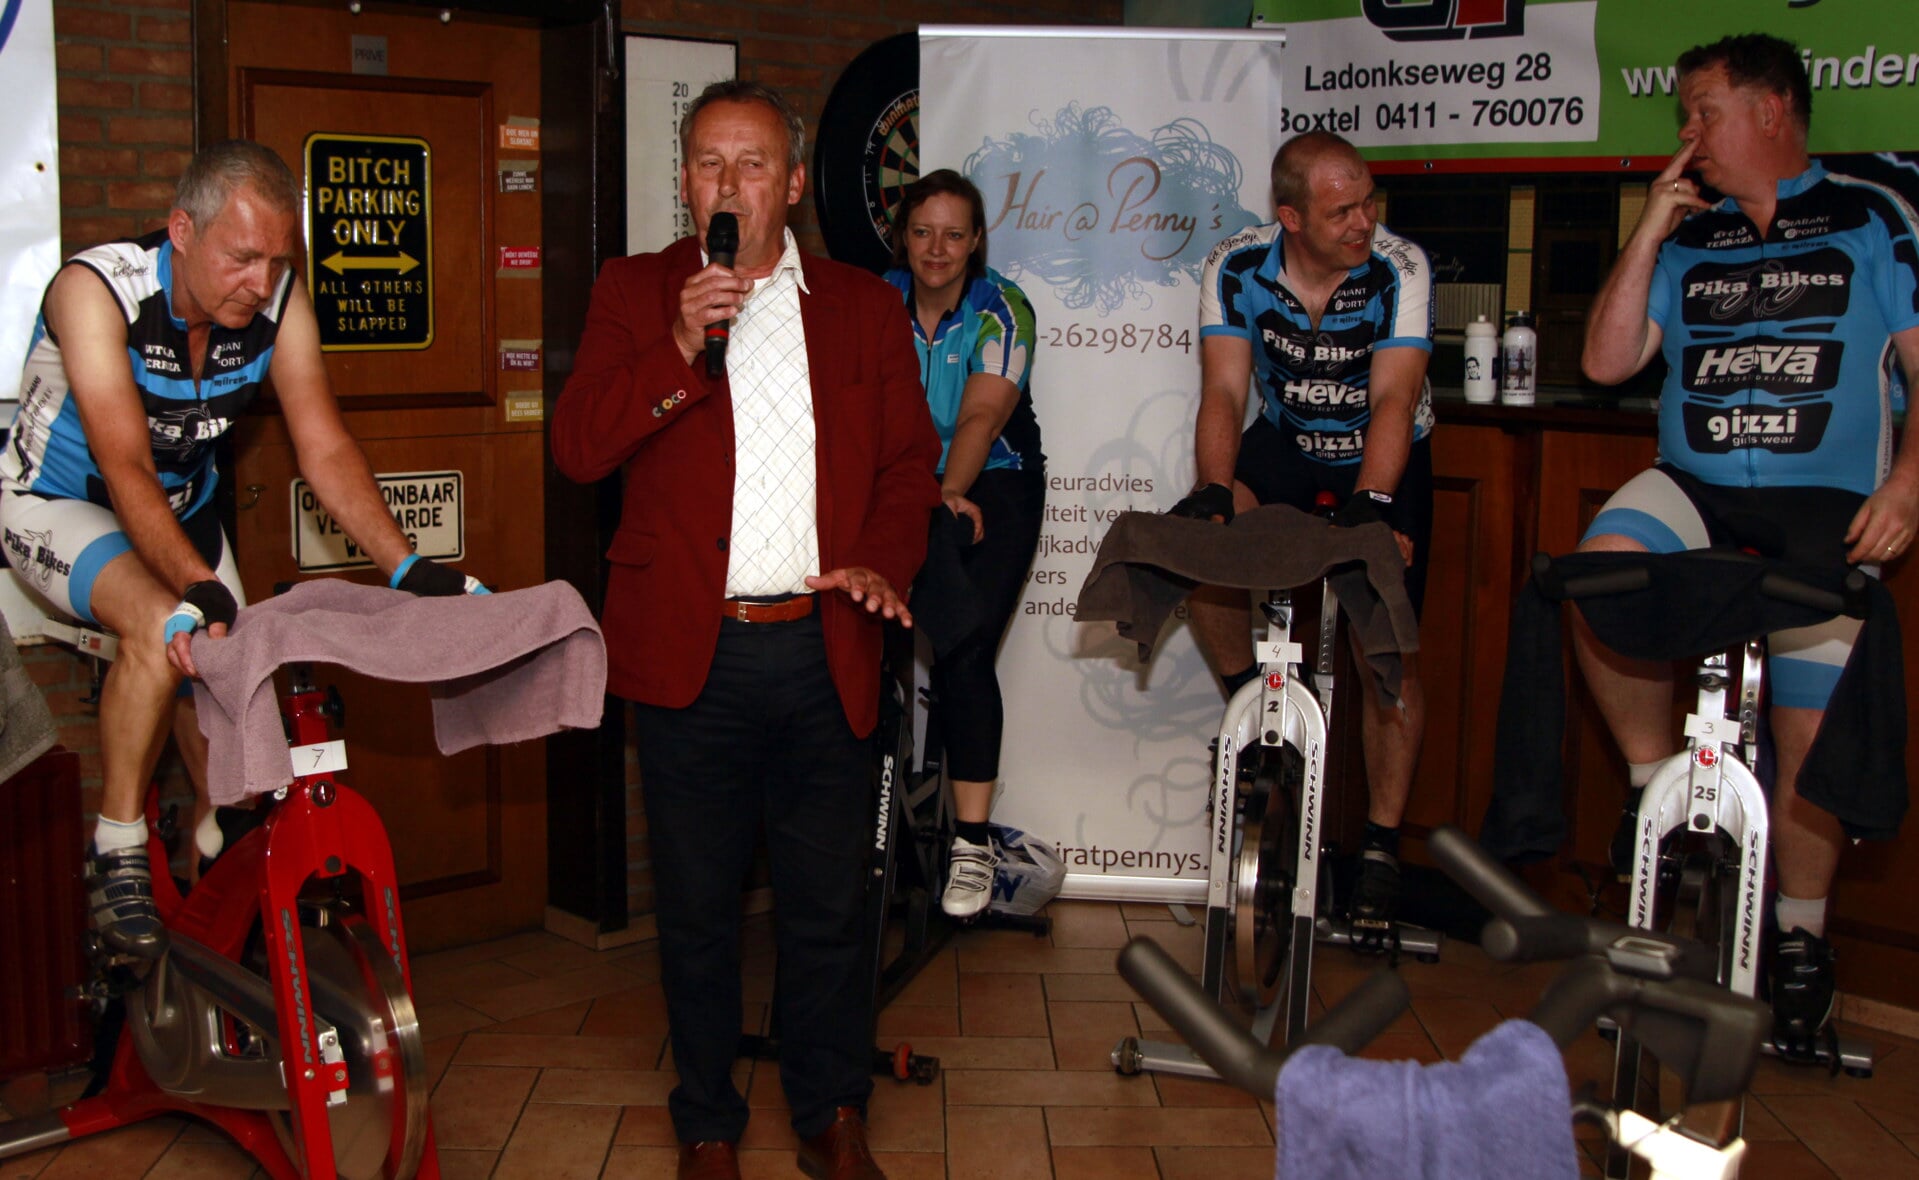 Wethouder Herman van Wanrooij verricht de opening van de spinningmarathon in café 't Geveltje. (Foto: Gerard Schalkx).